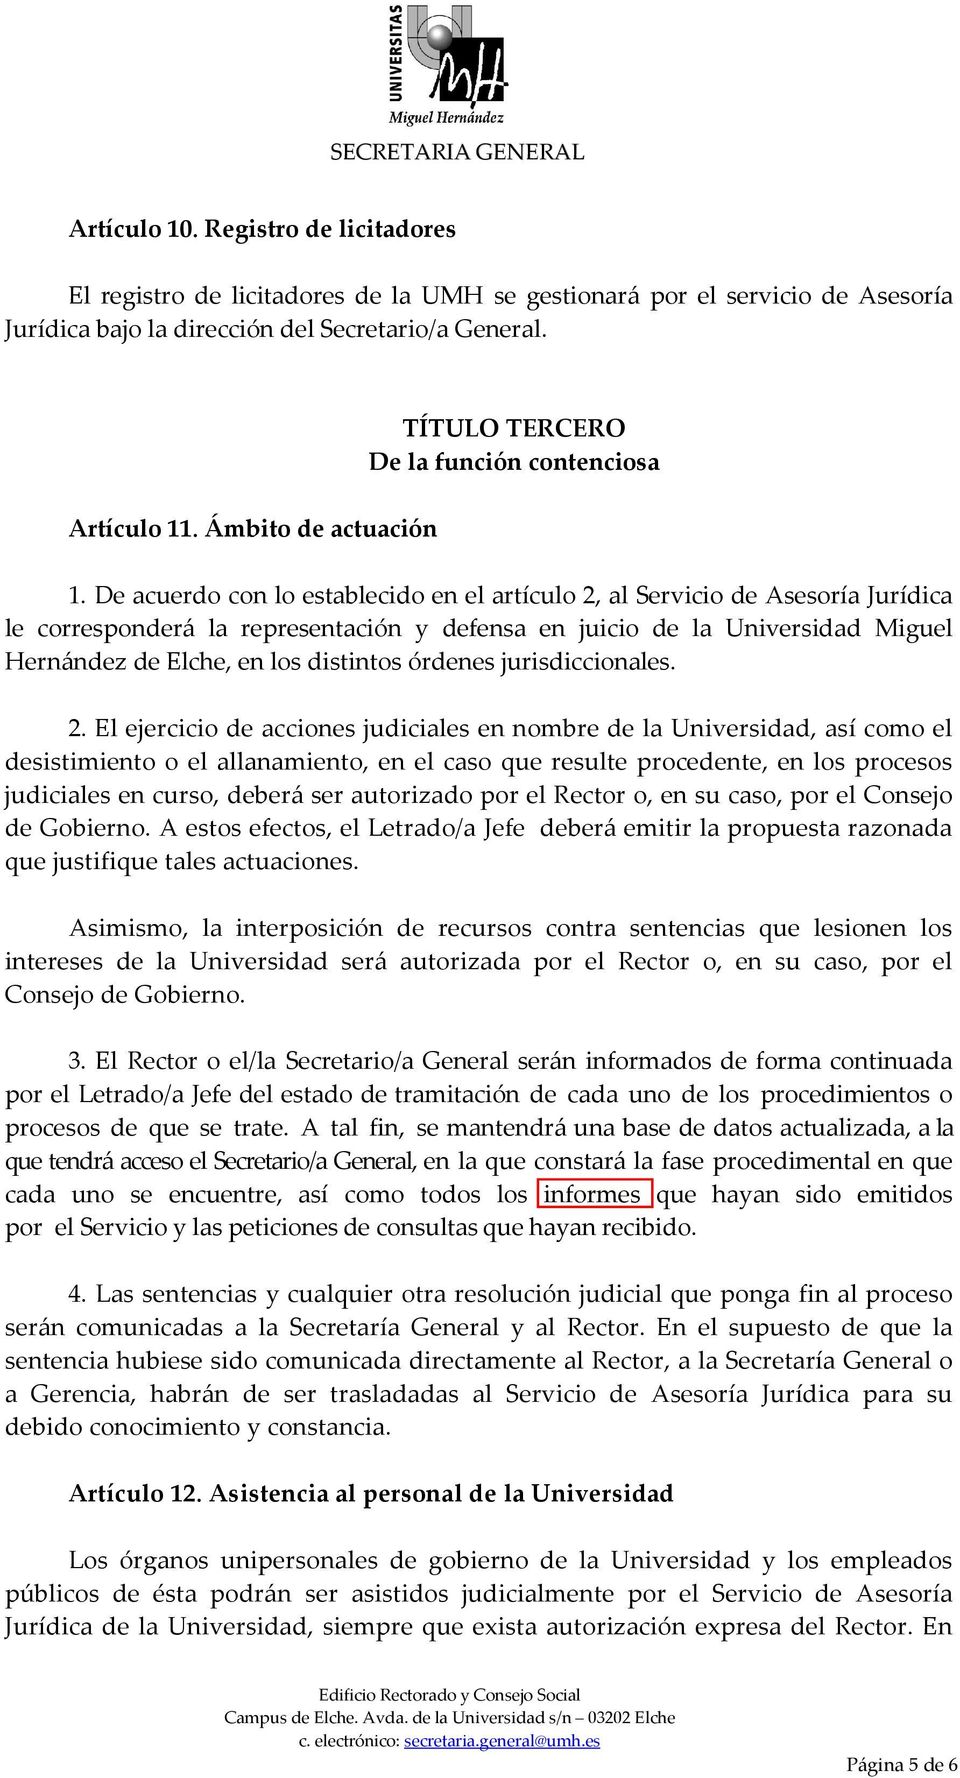 De acuerdo con lo establecido en el artículo 2, al Servicio de Asesoría Jurídica le corresponderá la representación y defensa en juicio de la Universidad Miguel Hernández de Elche, en los distintos